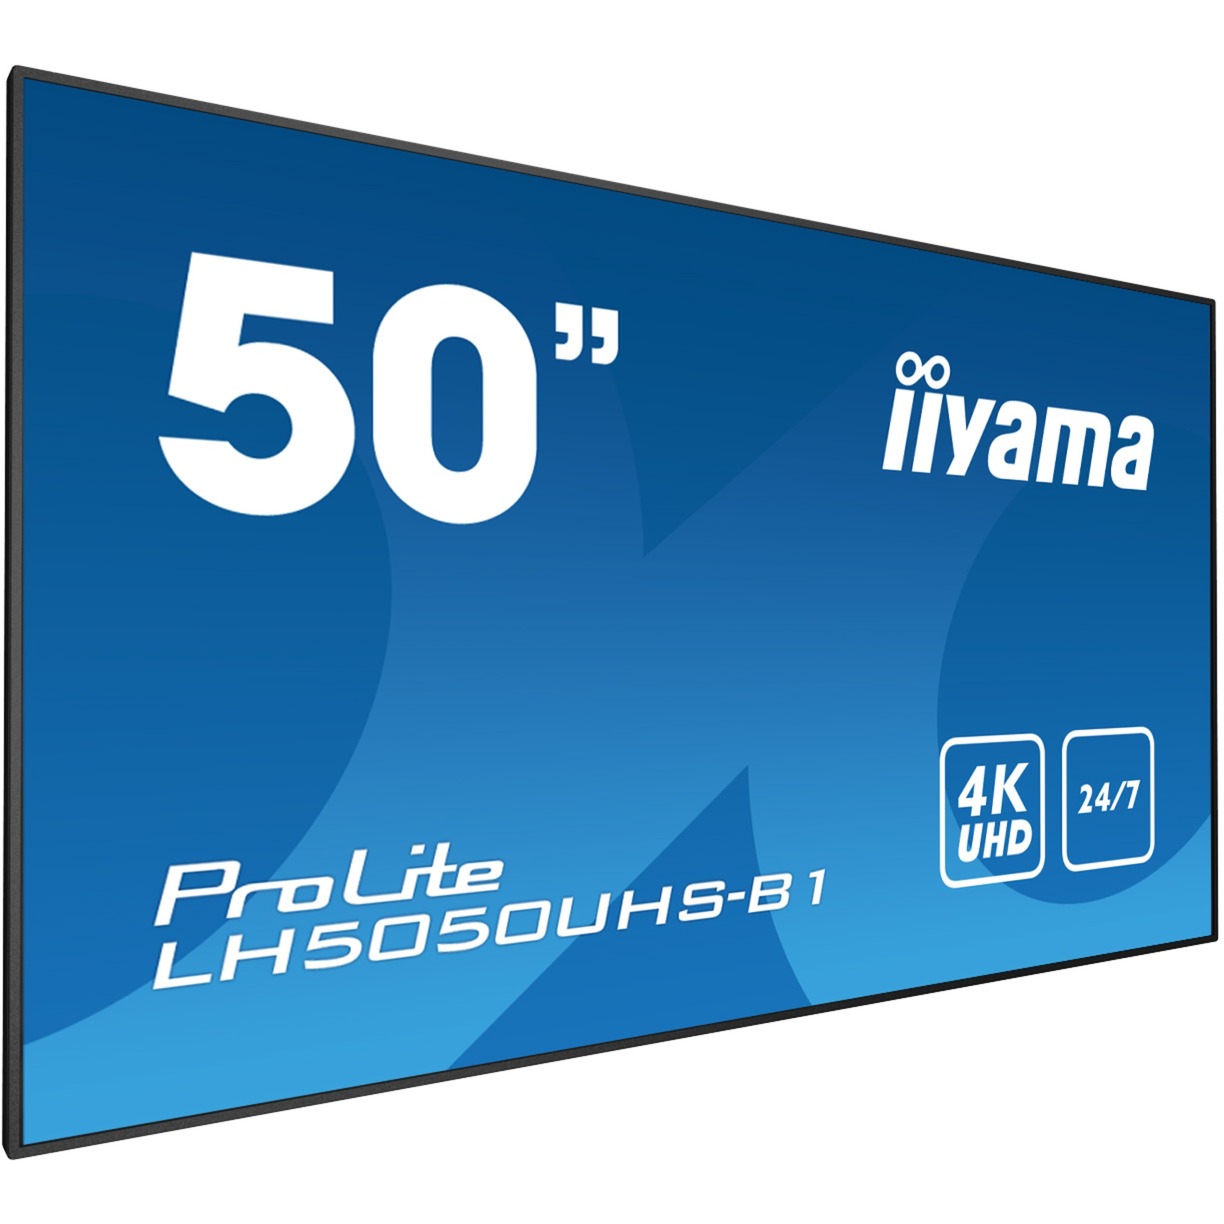 LH5050UHS-B1 wyświetlacz znaków 127 cm (50") LED (Dioda elektroluminescencyjna) 4K Ultra HD Video wall Czarny